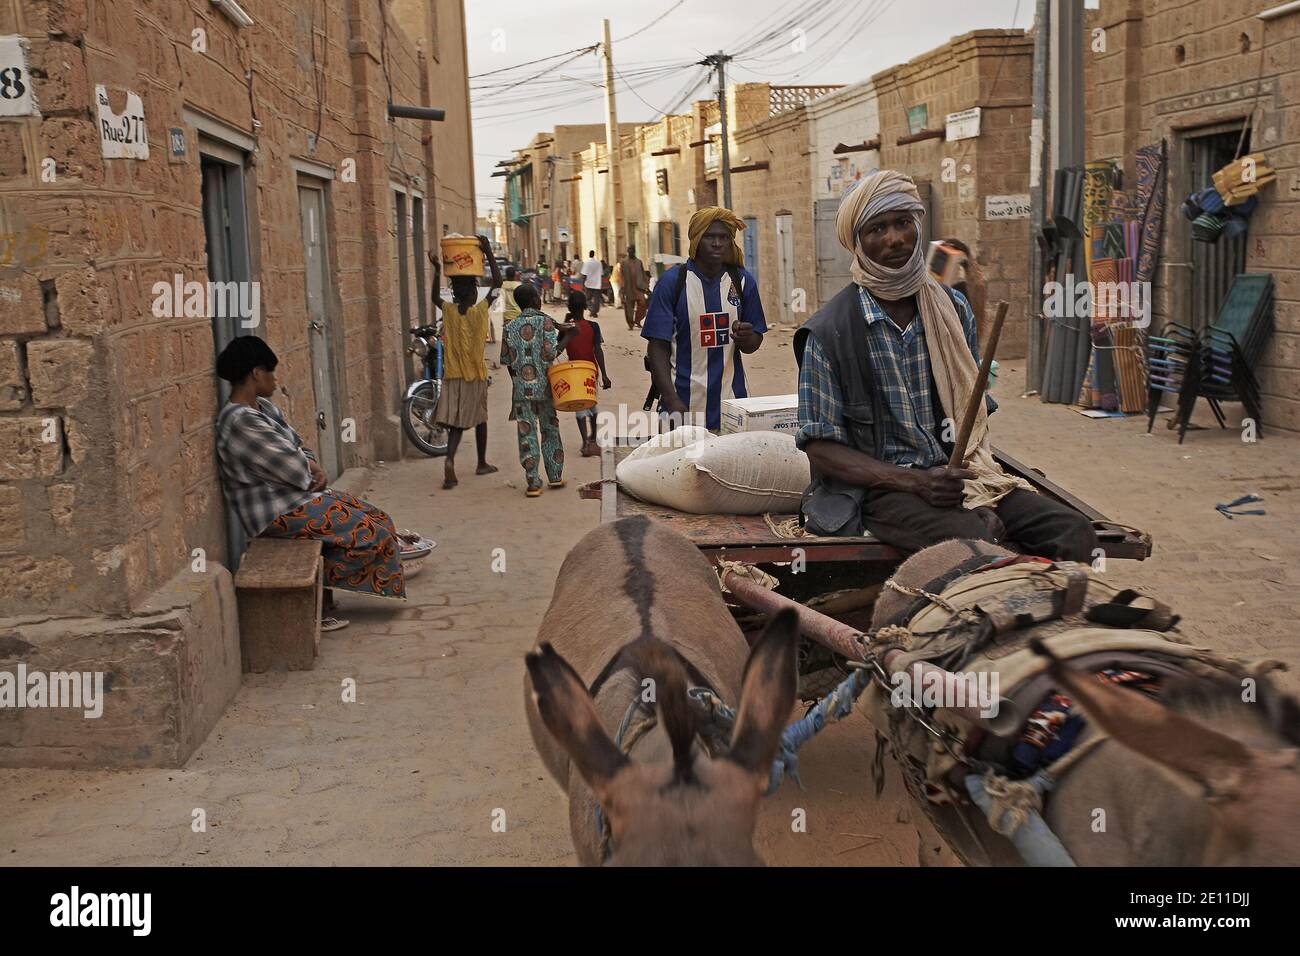 Mali, Timbuktu. Man and donkey cart Stock Photo